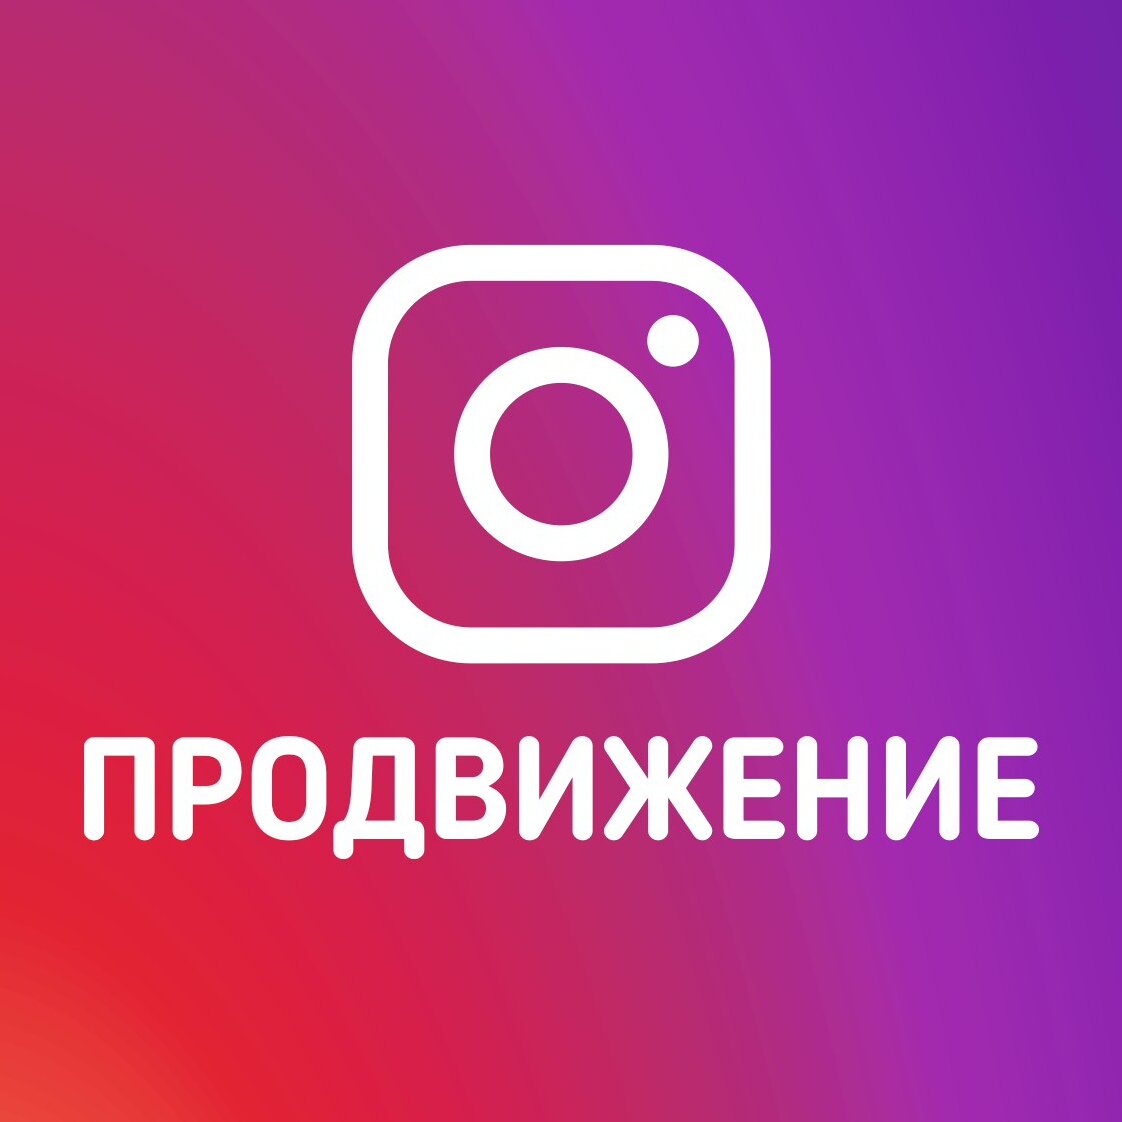 Крутые картинки на аву в ВК для девушек — фото в ВКонтакте